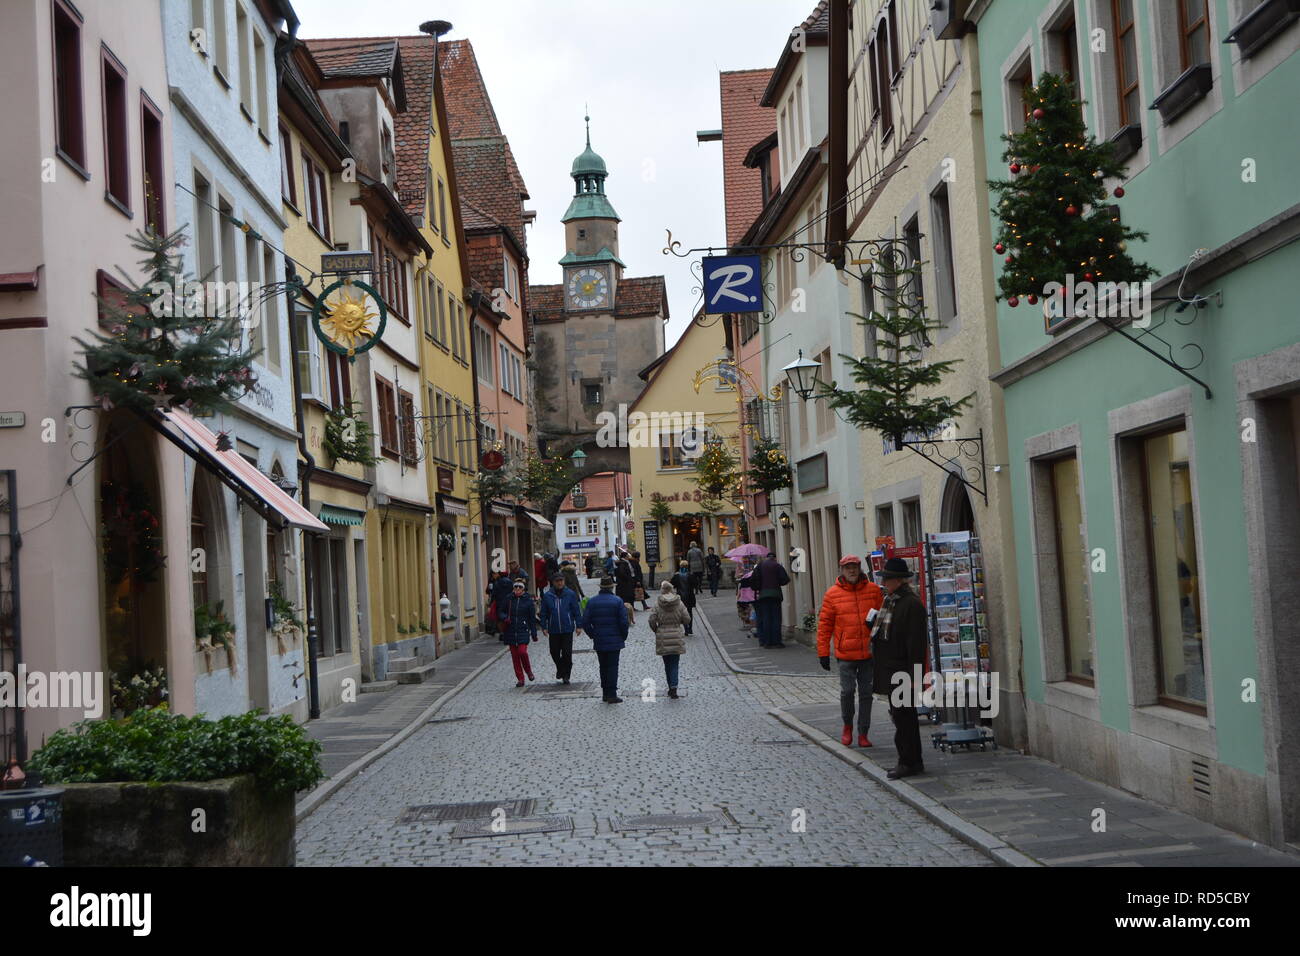 Les rues pittoresques de Rothenburg ob der Tauber sur Noël. L'Allemagne. Banque D'Images